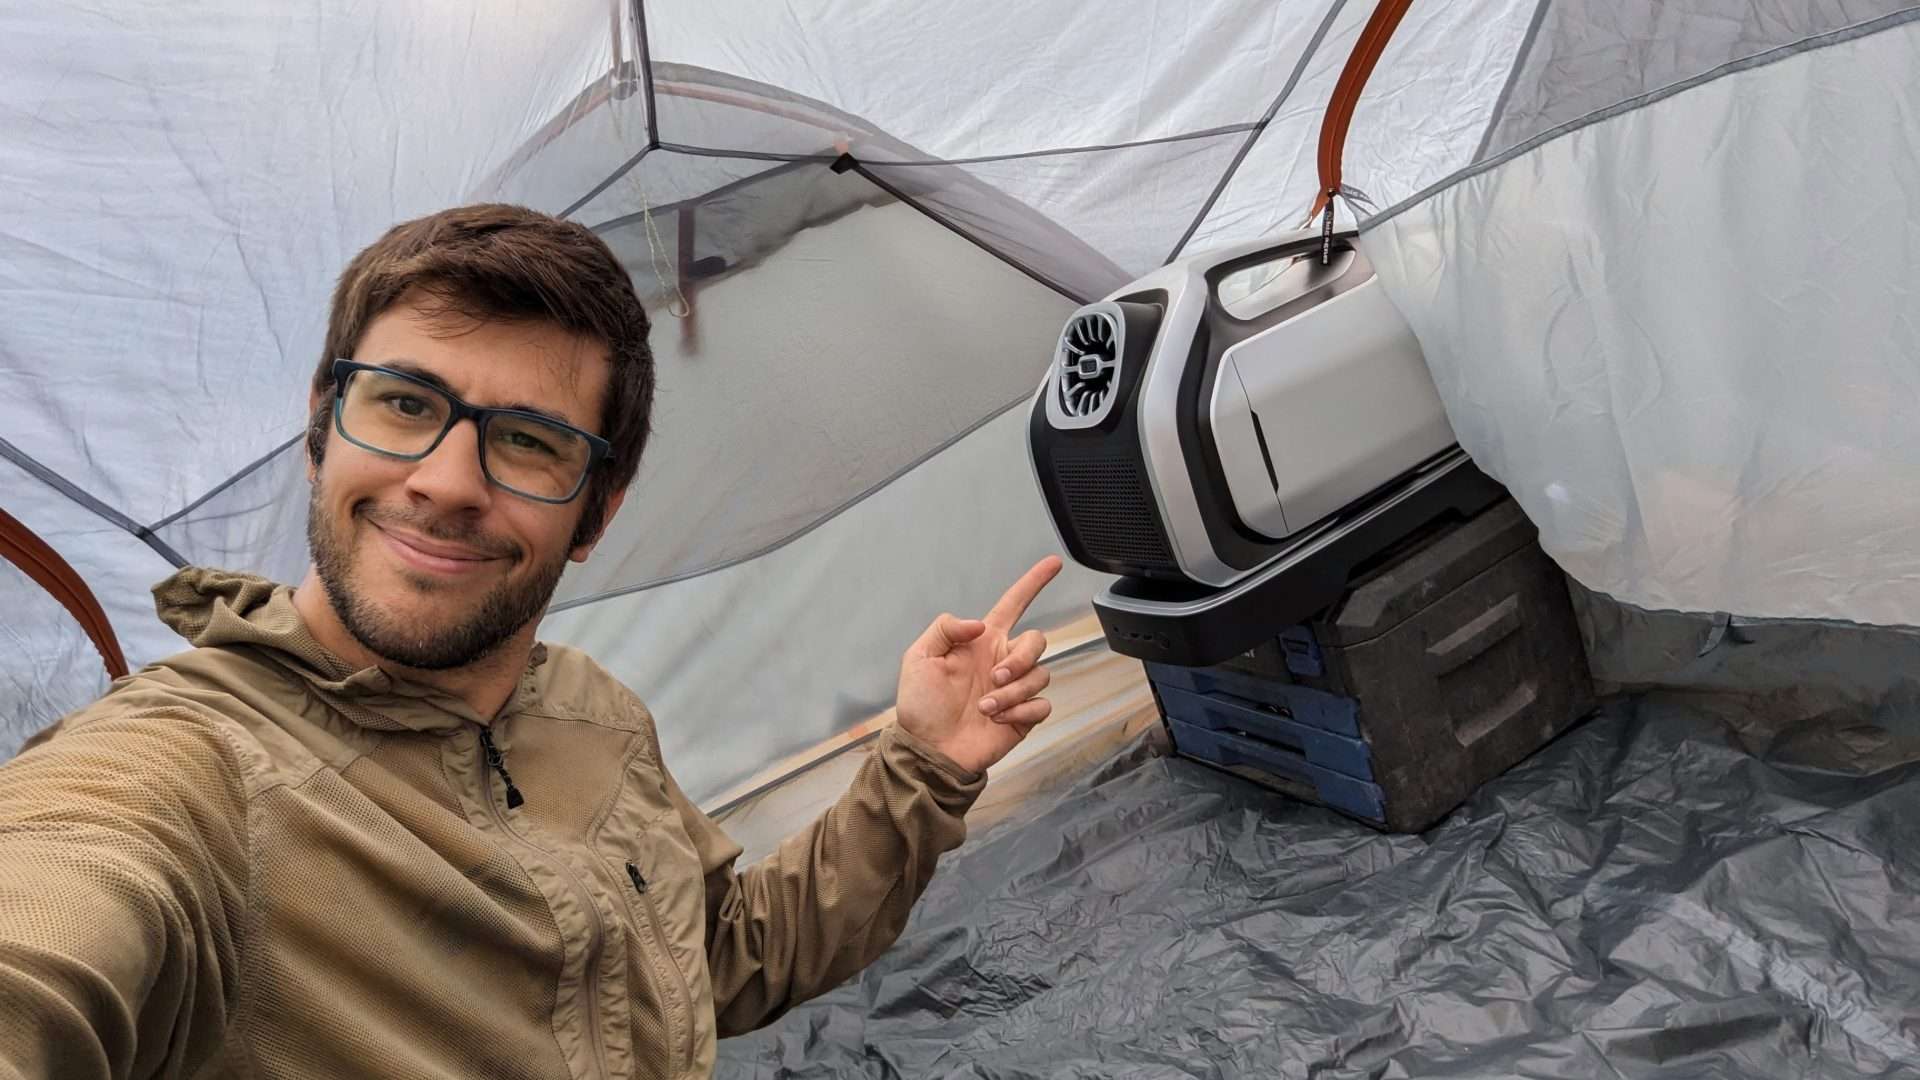 AC In a Tent? 